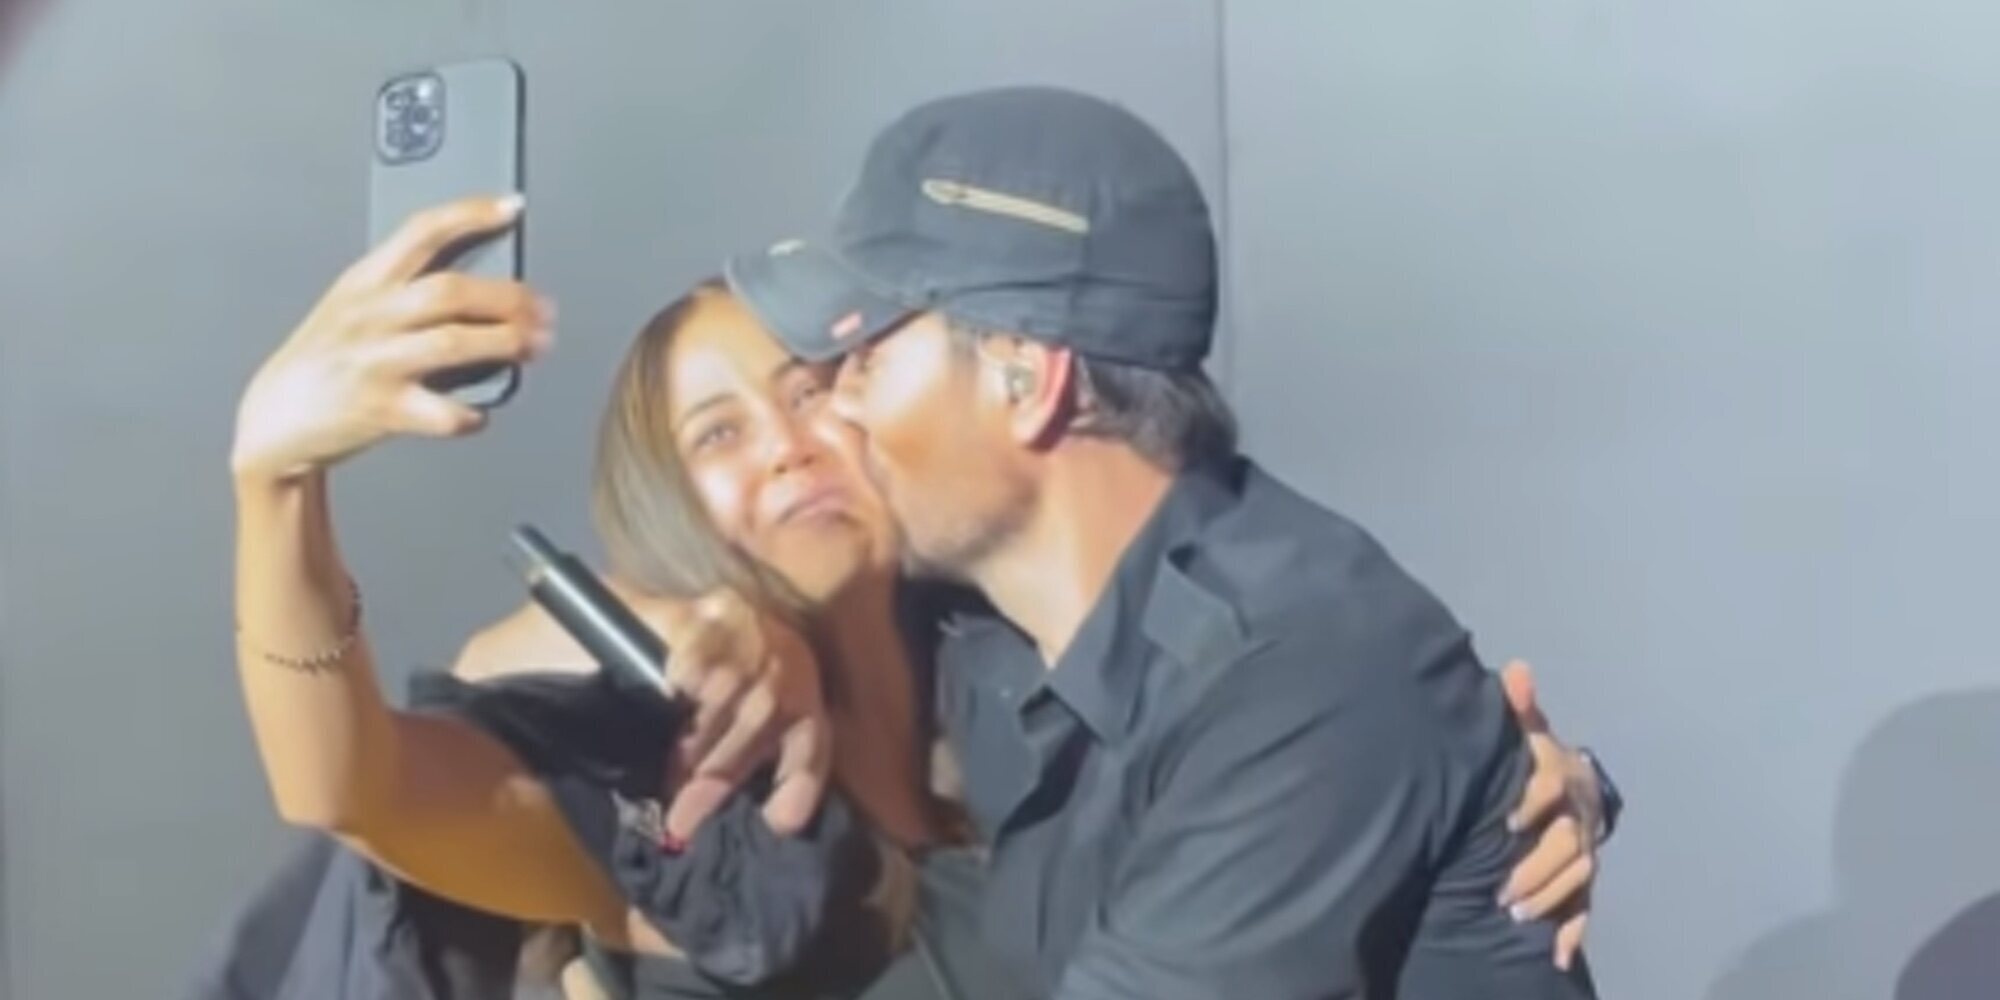 Enrique Iglesias protagoniza un apasionado beso con una fan durante un concierto